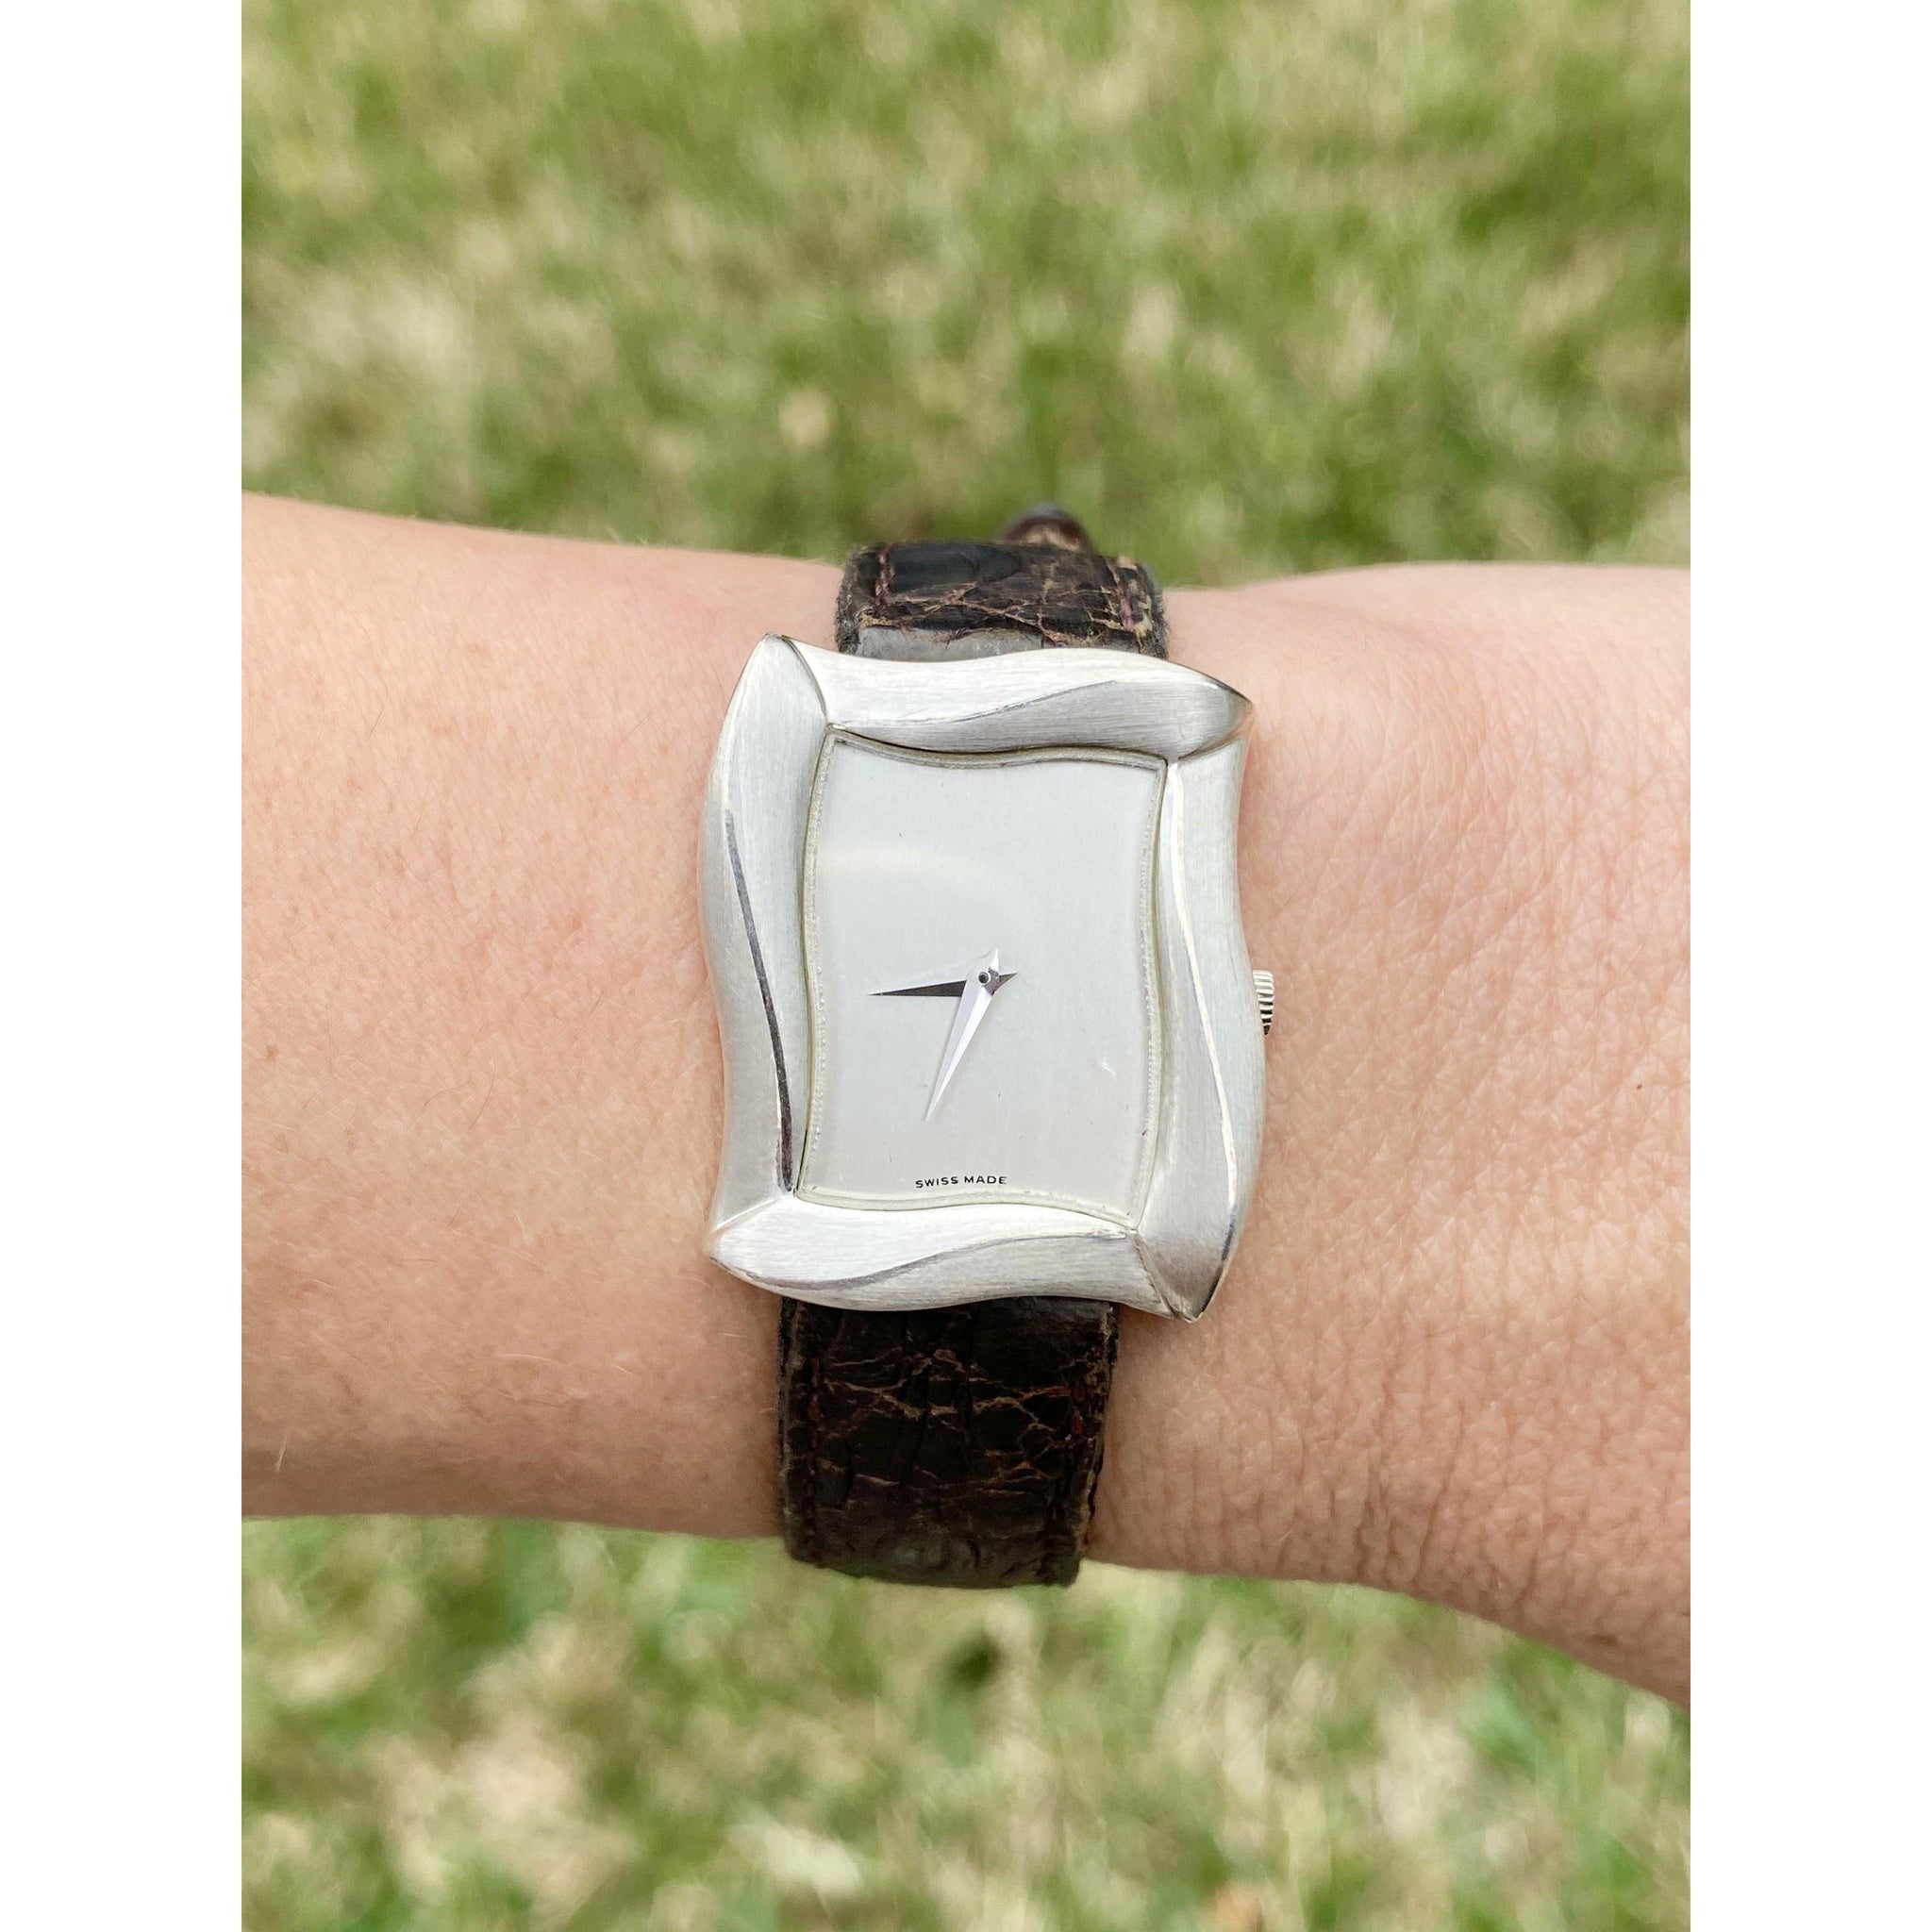 Angela Cummings Tank Style Women's Wrist Watch in Leather Strap-watch-ASSAY